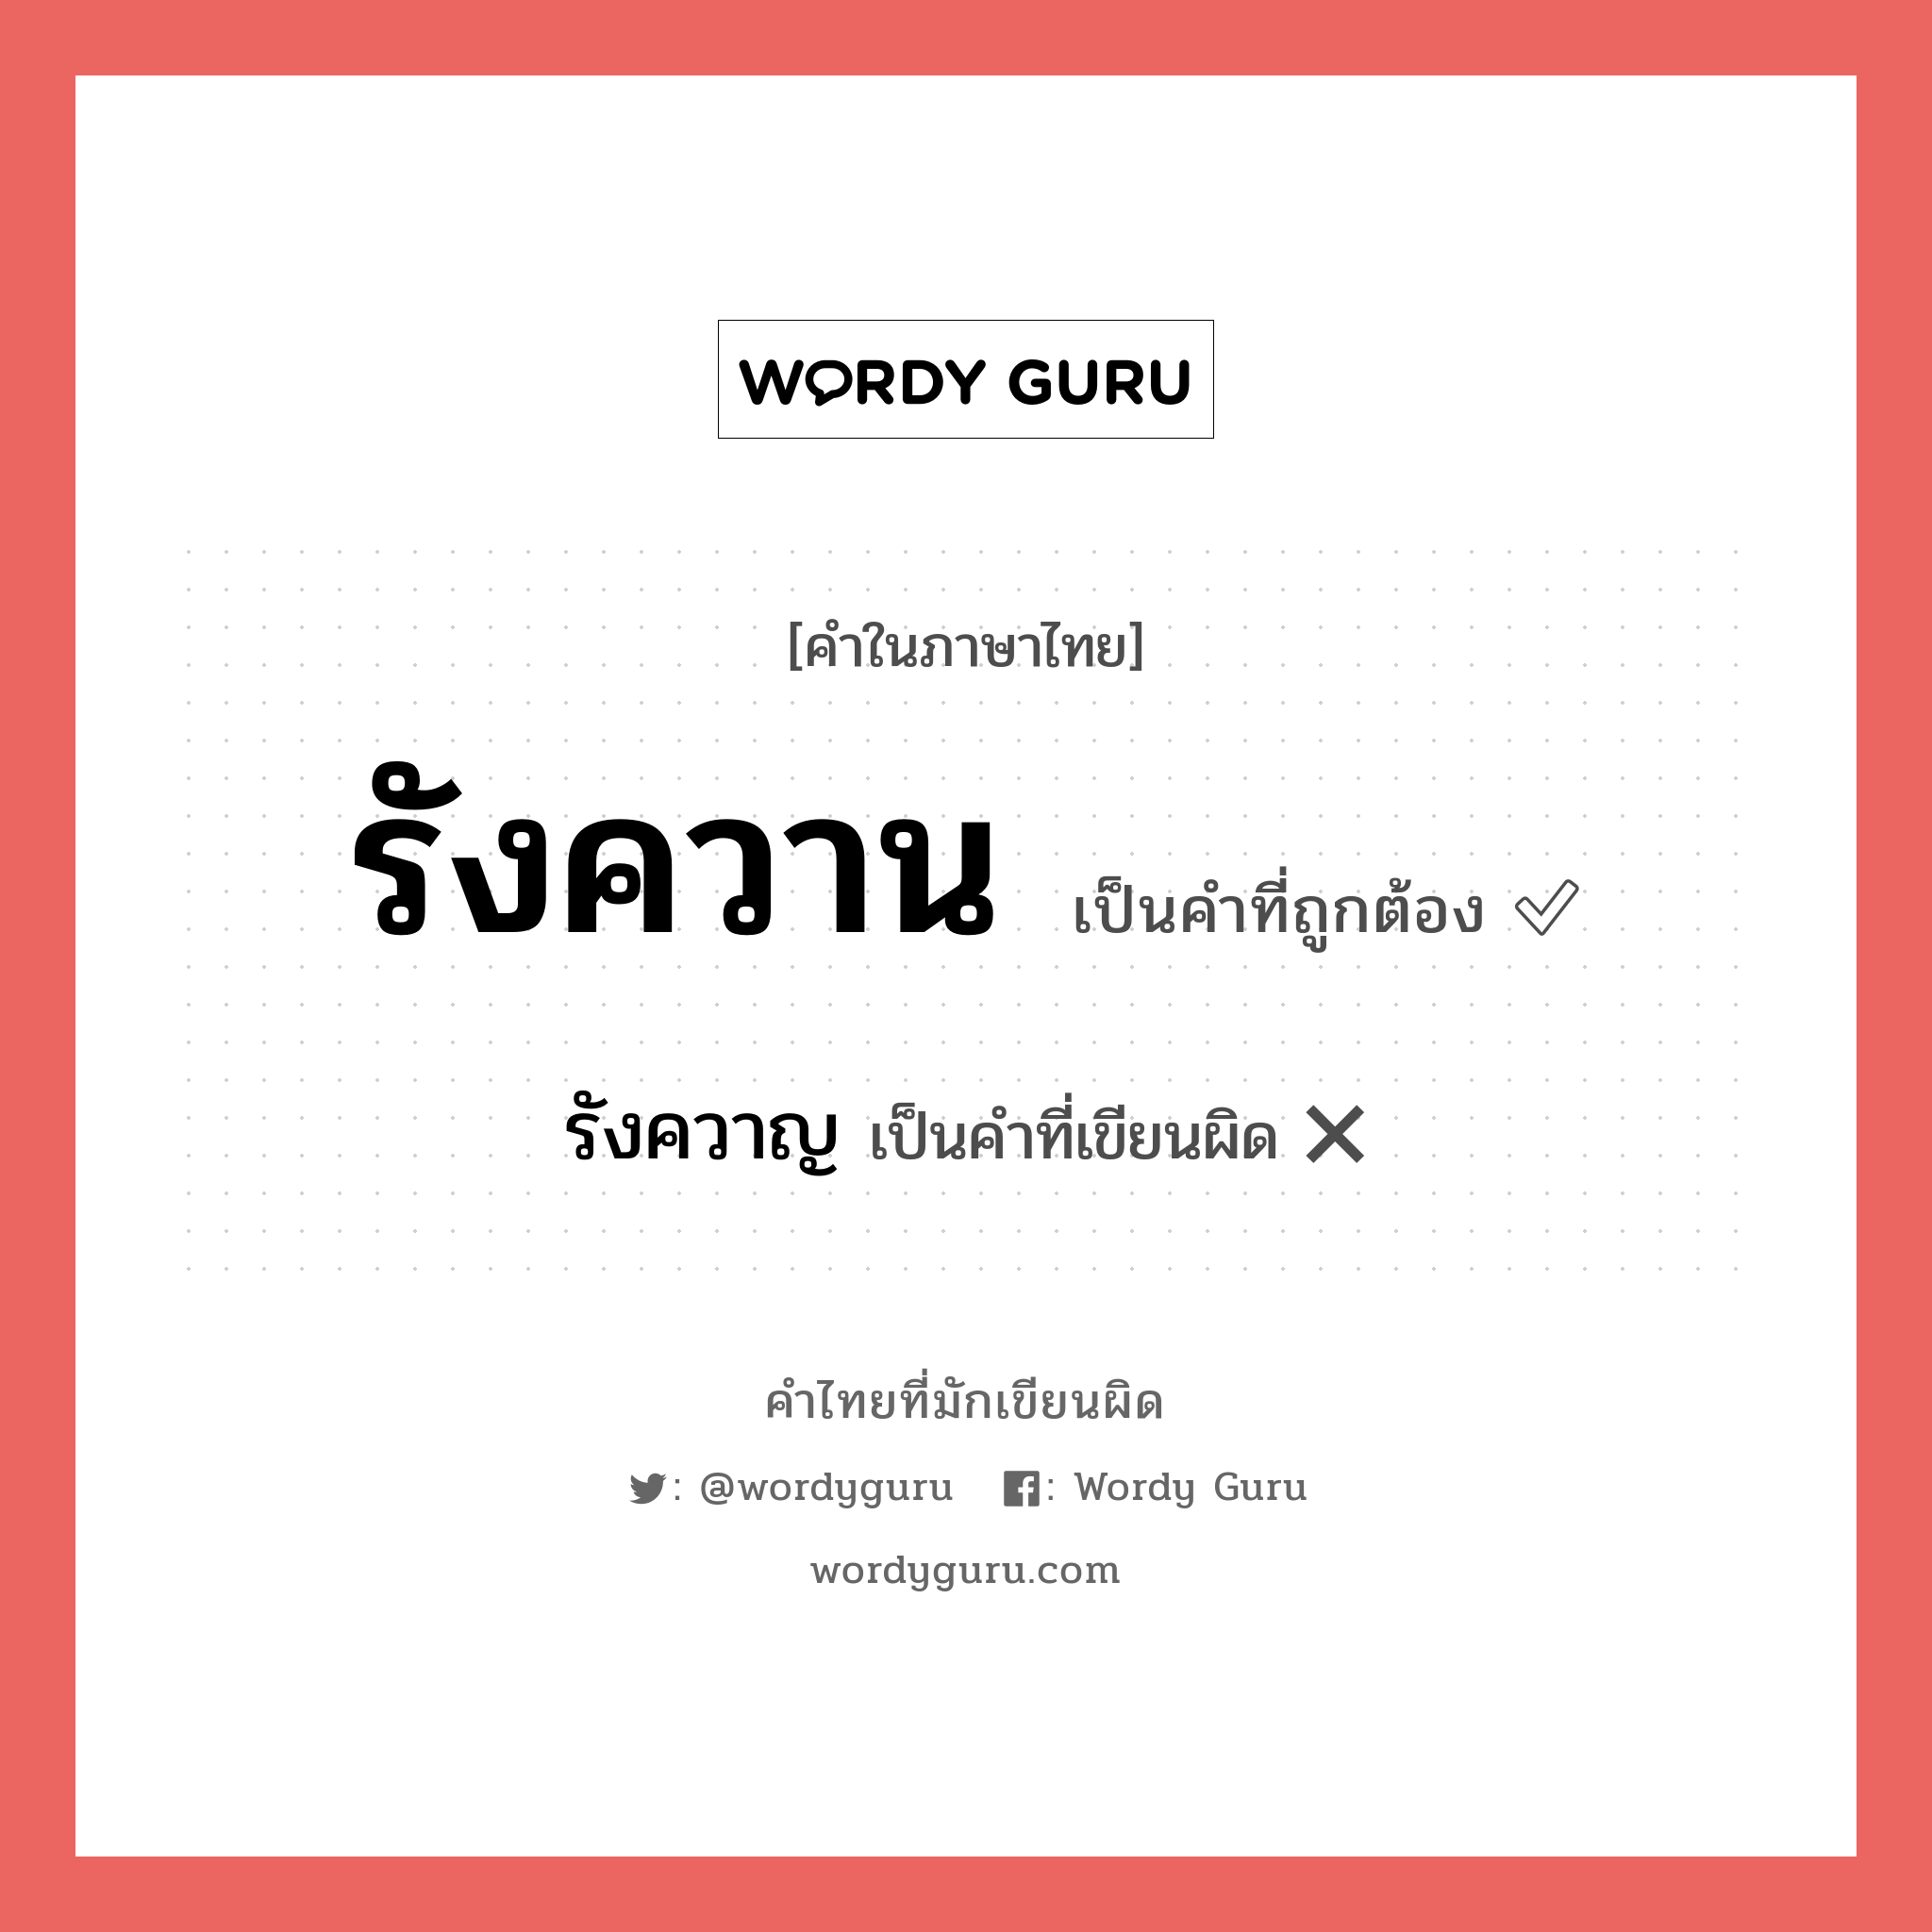 รังควาน หรือ รังควาญ เขียนยังไง? คำไหนเขียนถูก?, คำในภาษาไทยที่มักเขียนผิด รังควาน คำที่ผิด ❌ รังควาญ